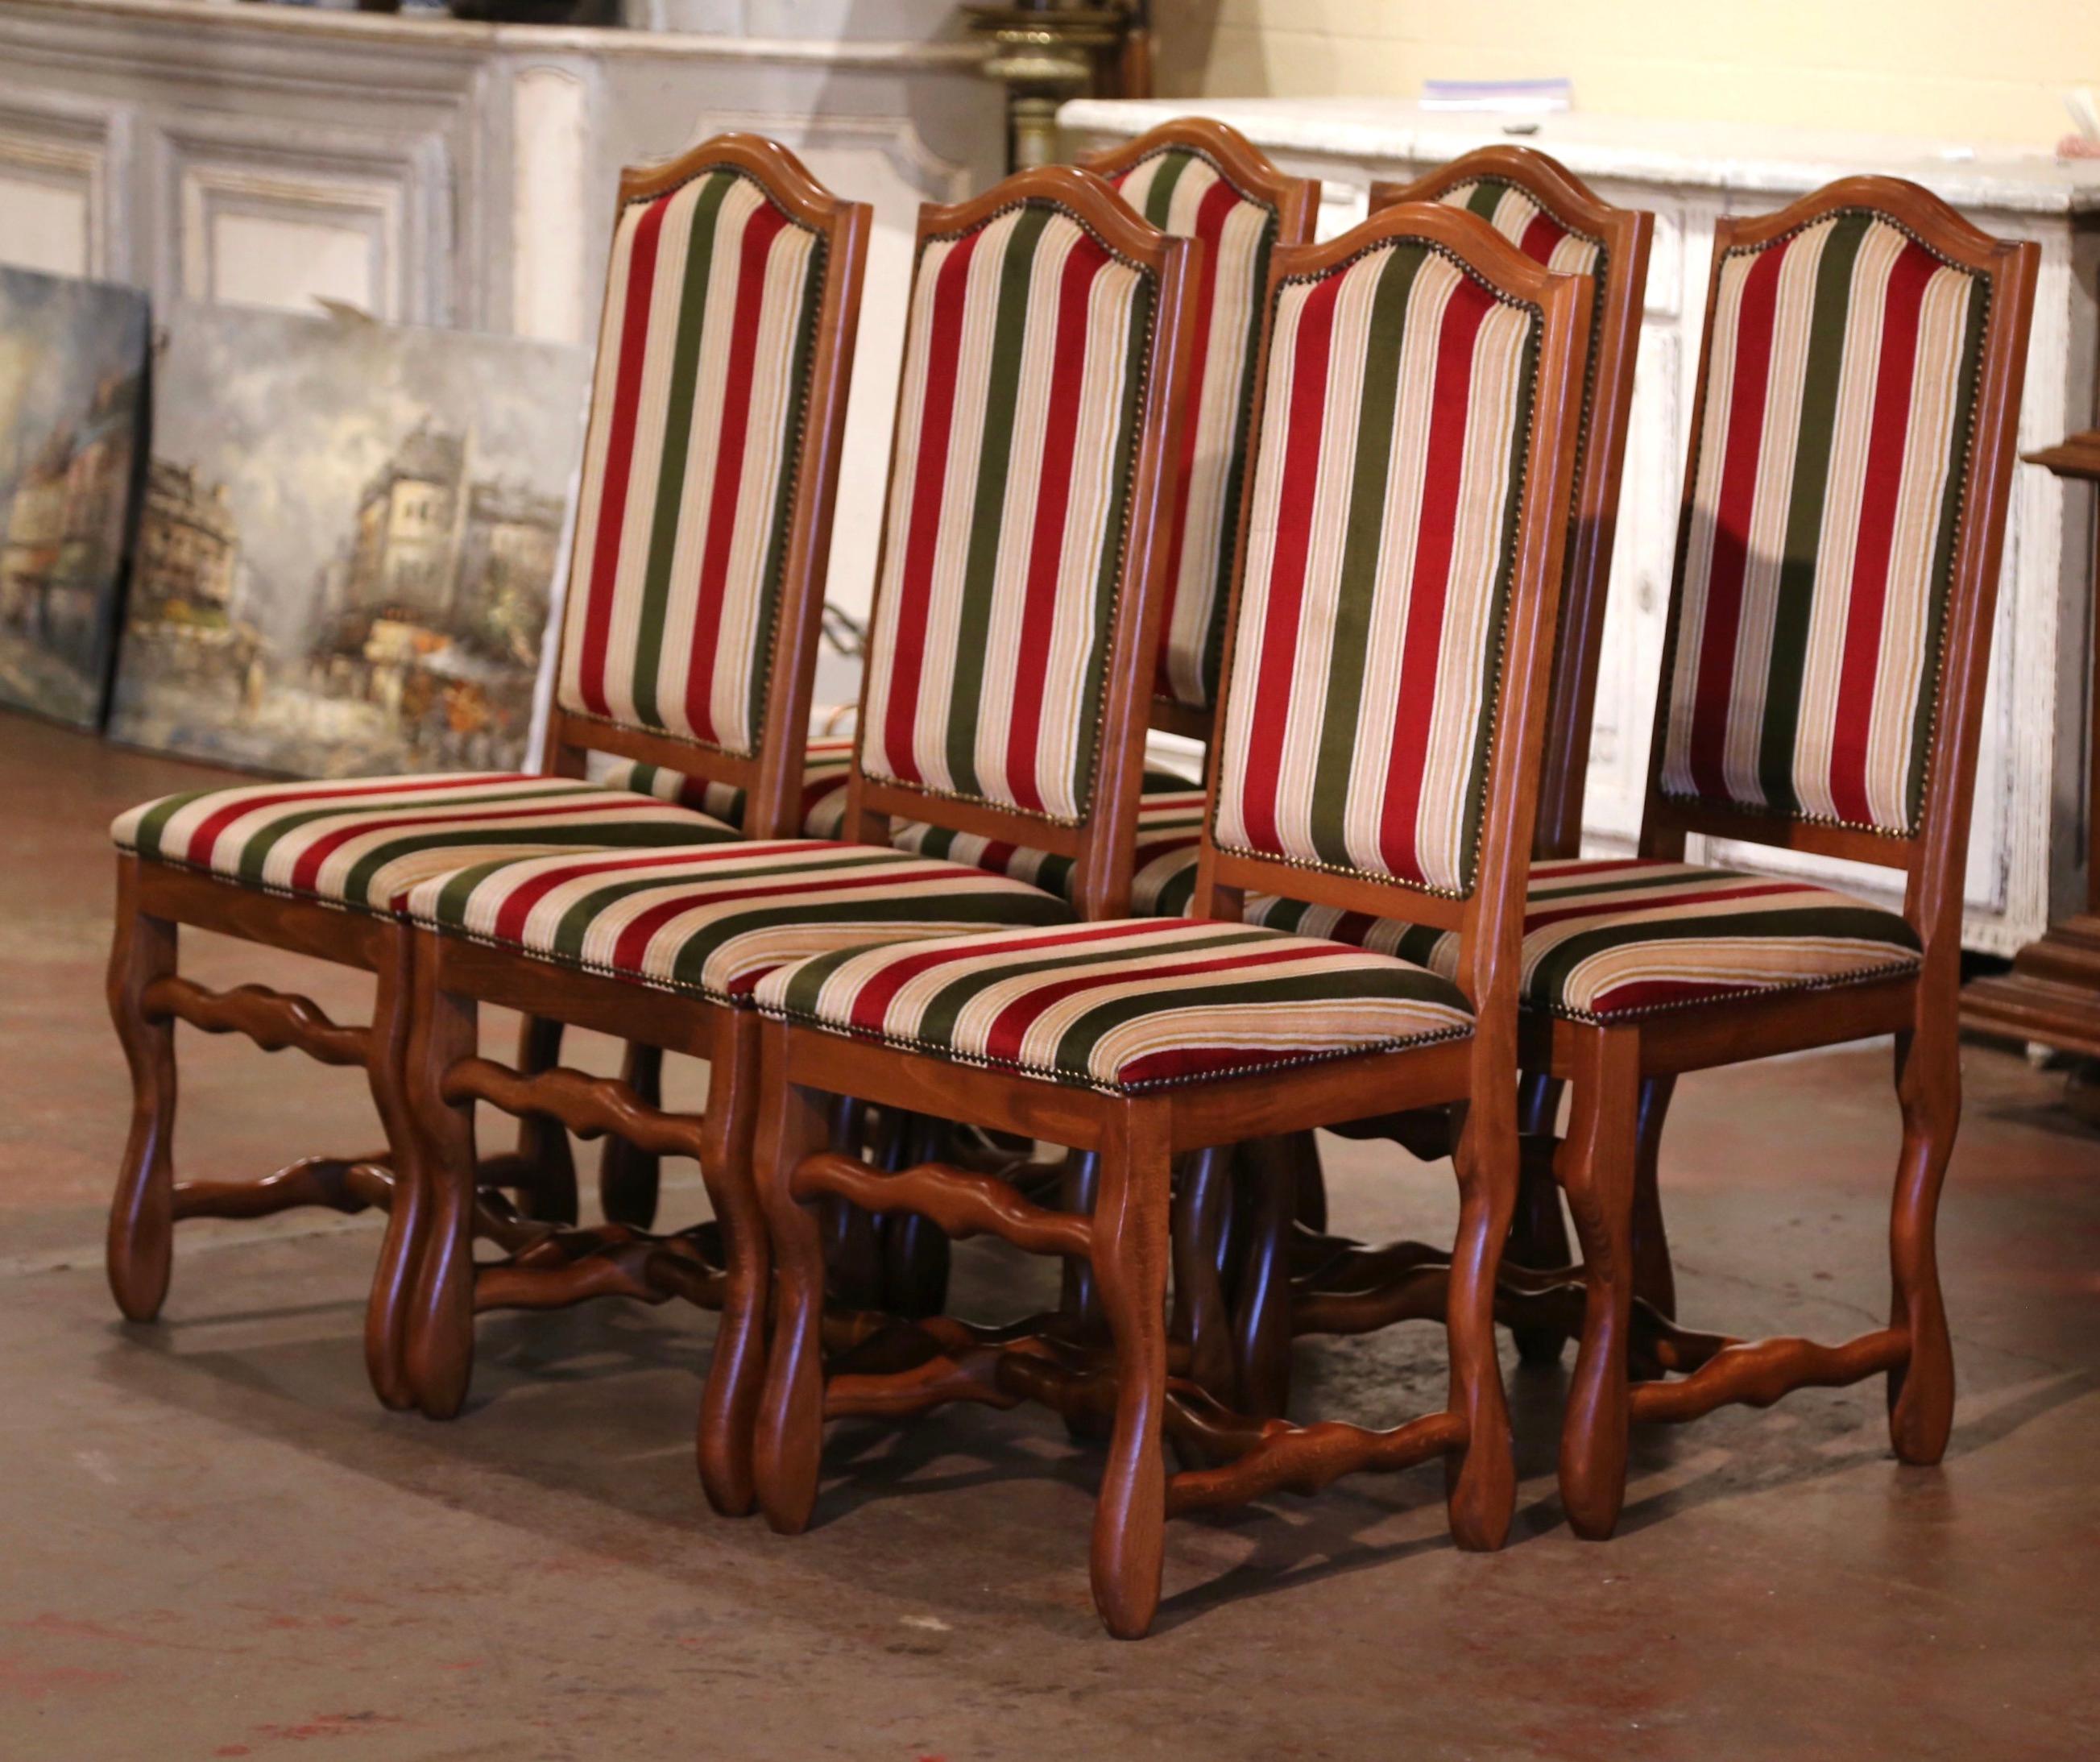 Diese eleganten Beistellstühle verleihen einem Frühstücks- oder Esszimmer ein neues Gesicht! Die um 1970 in Frankreich hergestellten Stühle aus Buchenholz stehen auf geschnitzten 